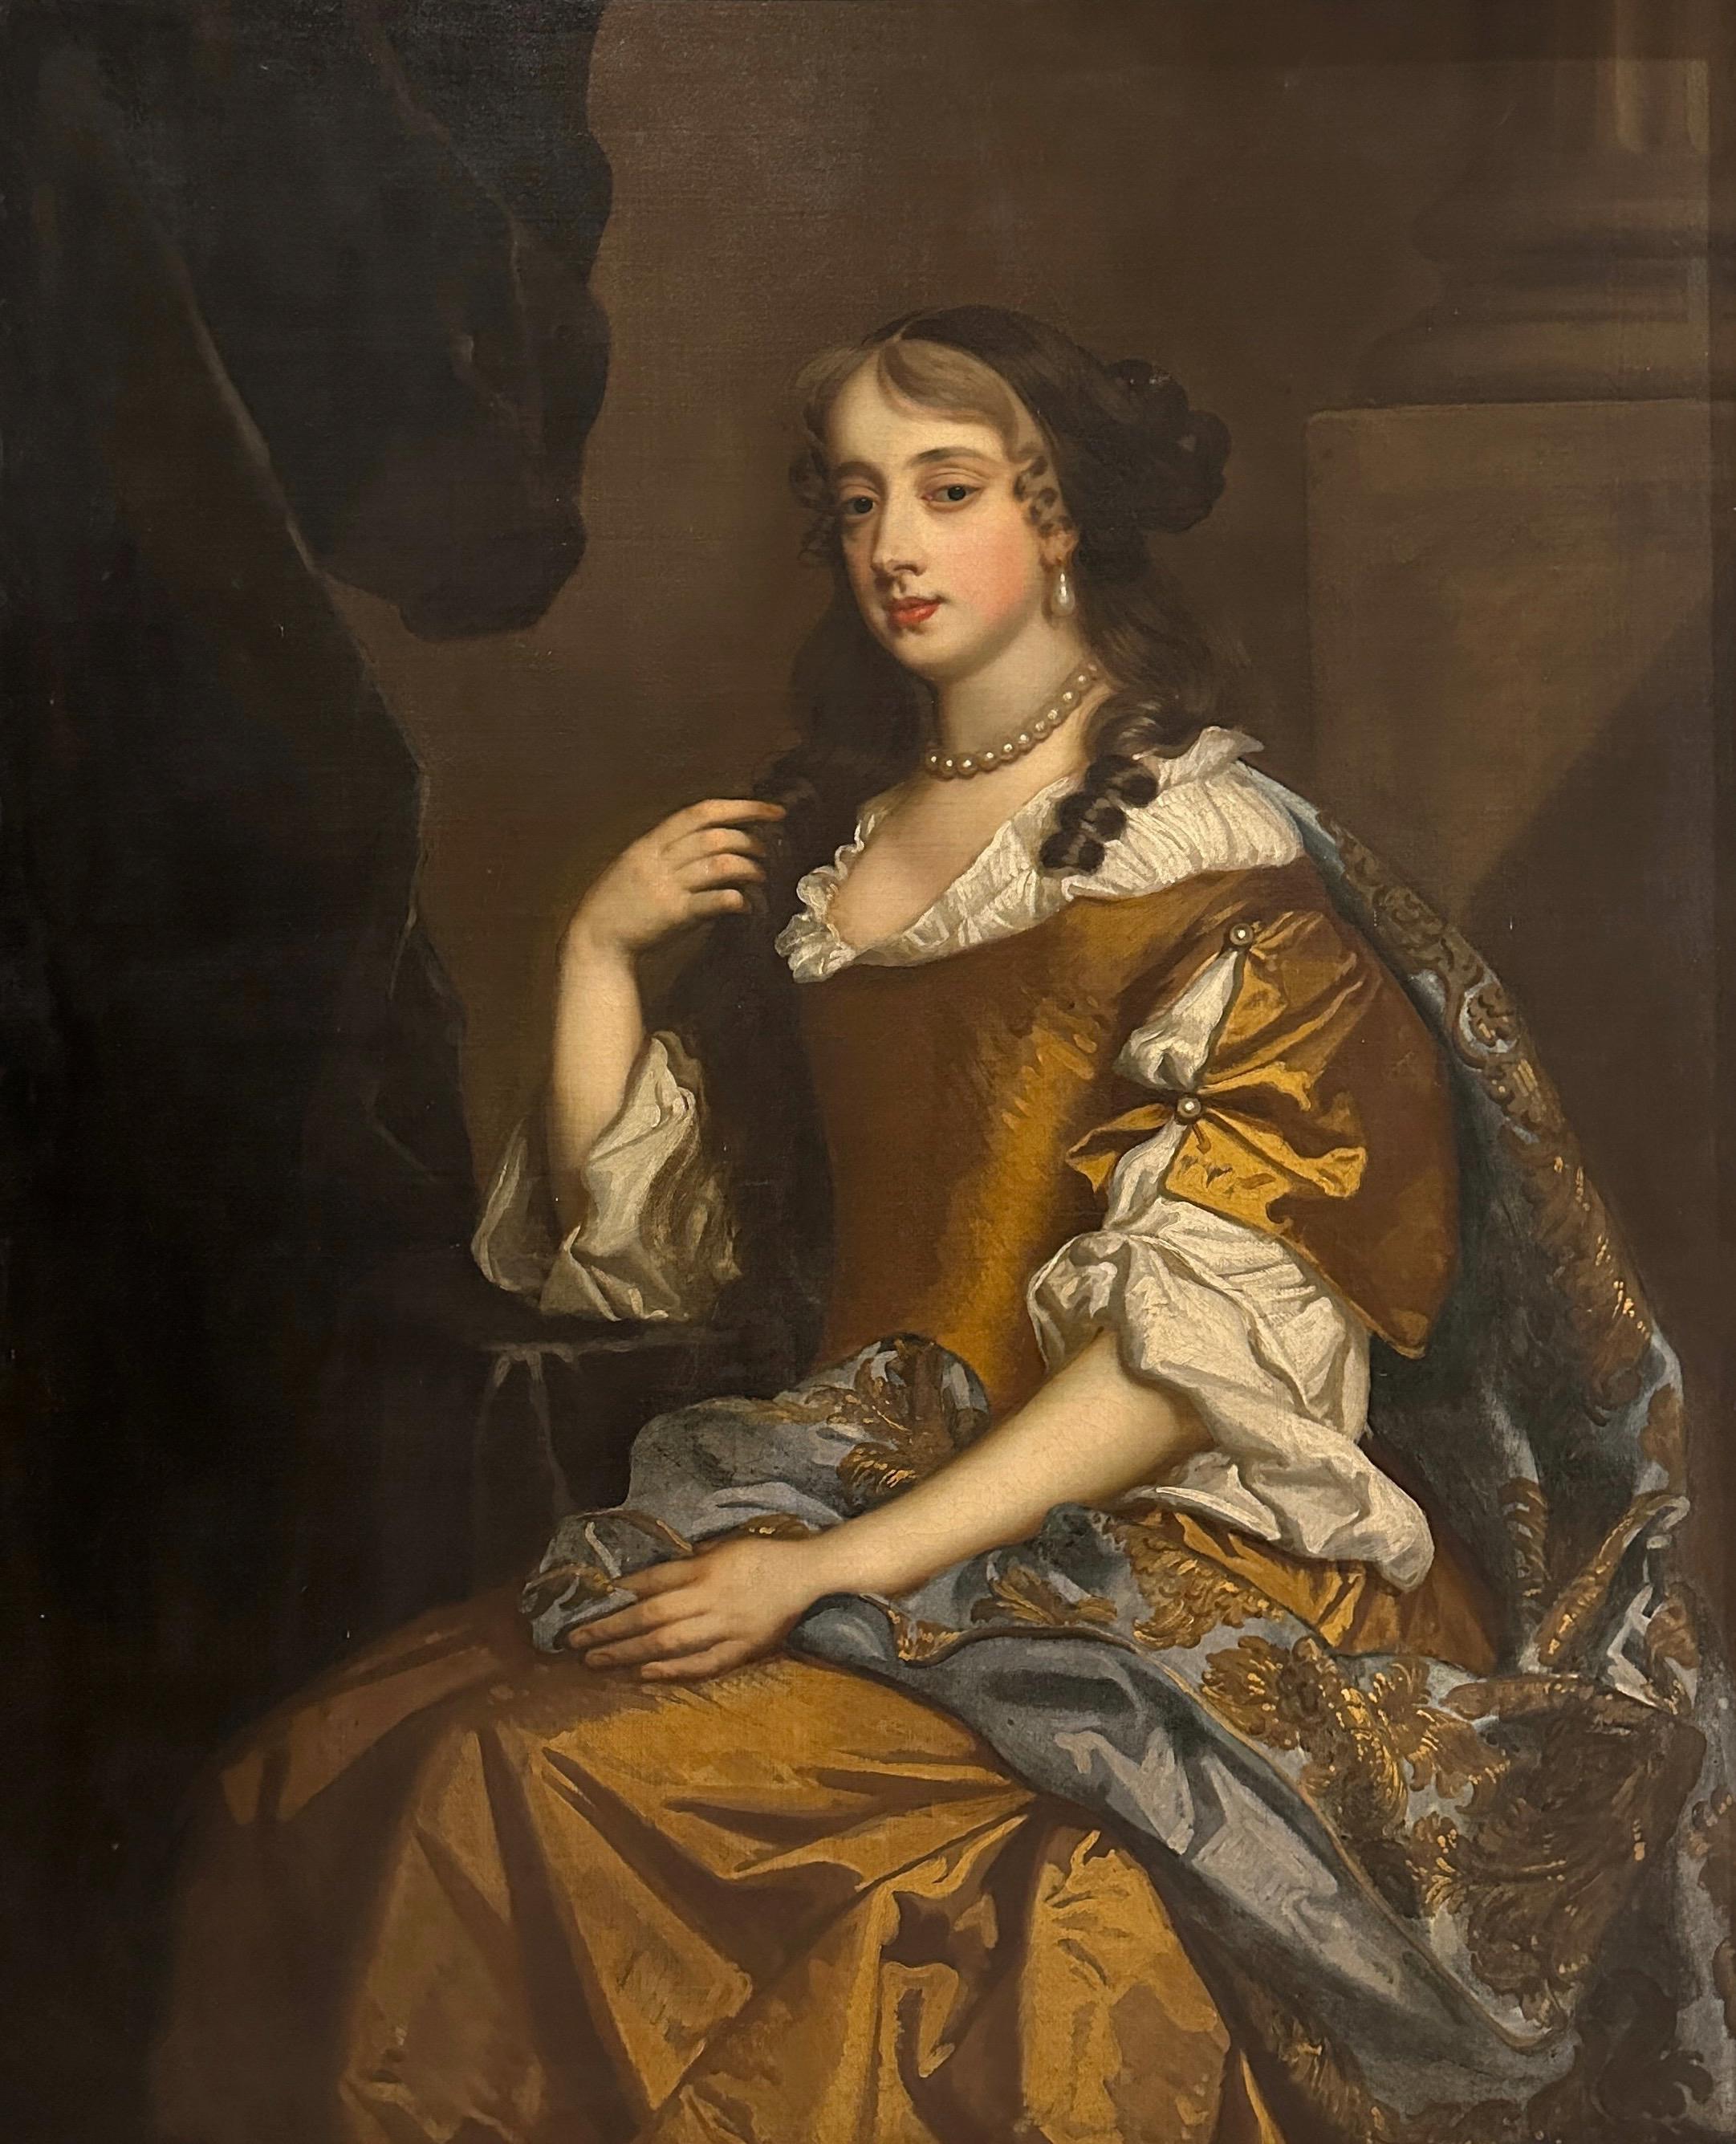 Porträt einer sitzenden Dame in einem Innenraum aus dem 17. Jahrhundert – Painting von Studio of Peter Lely